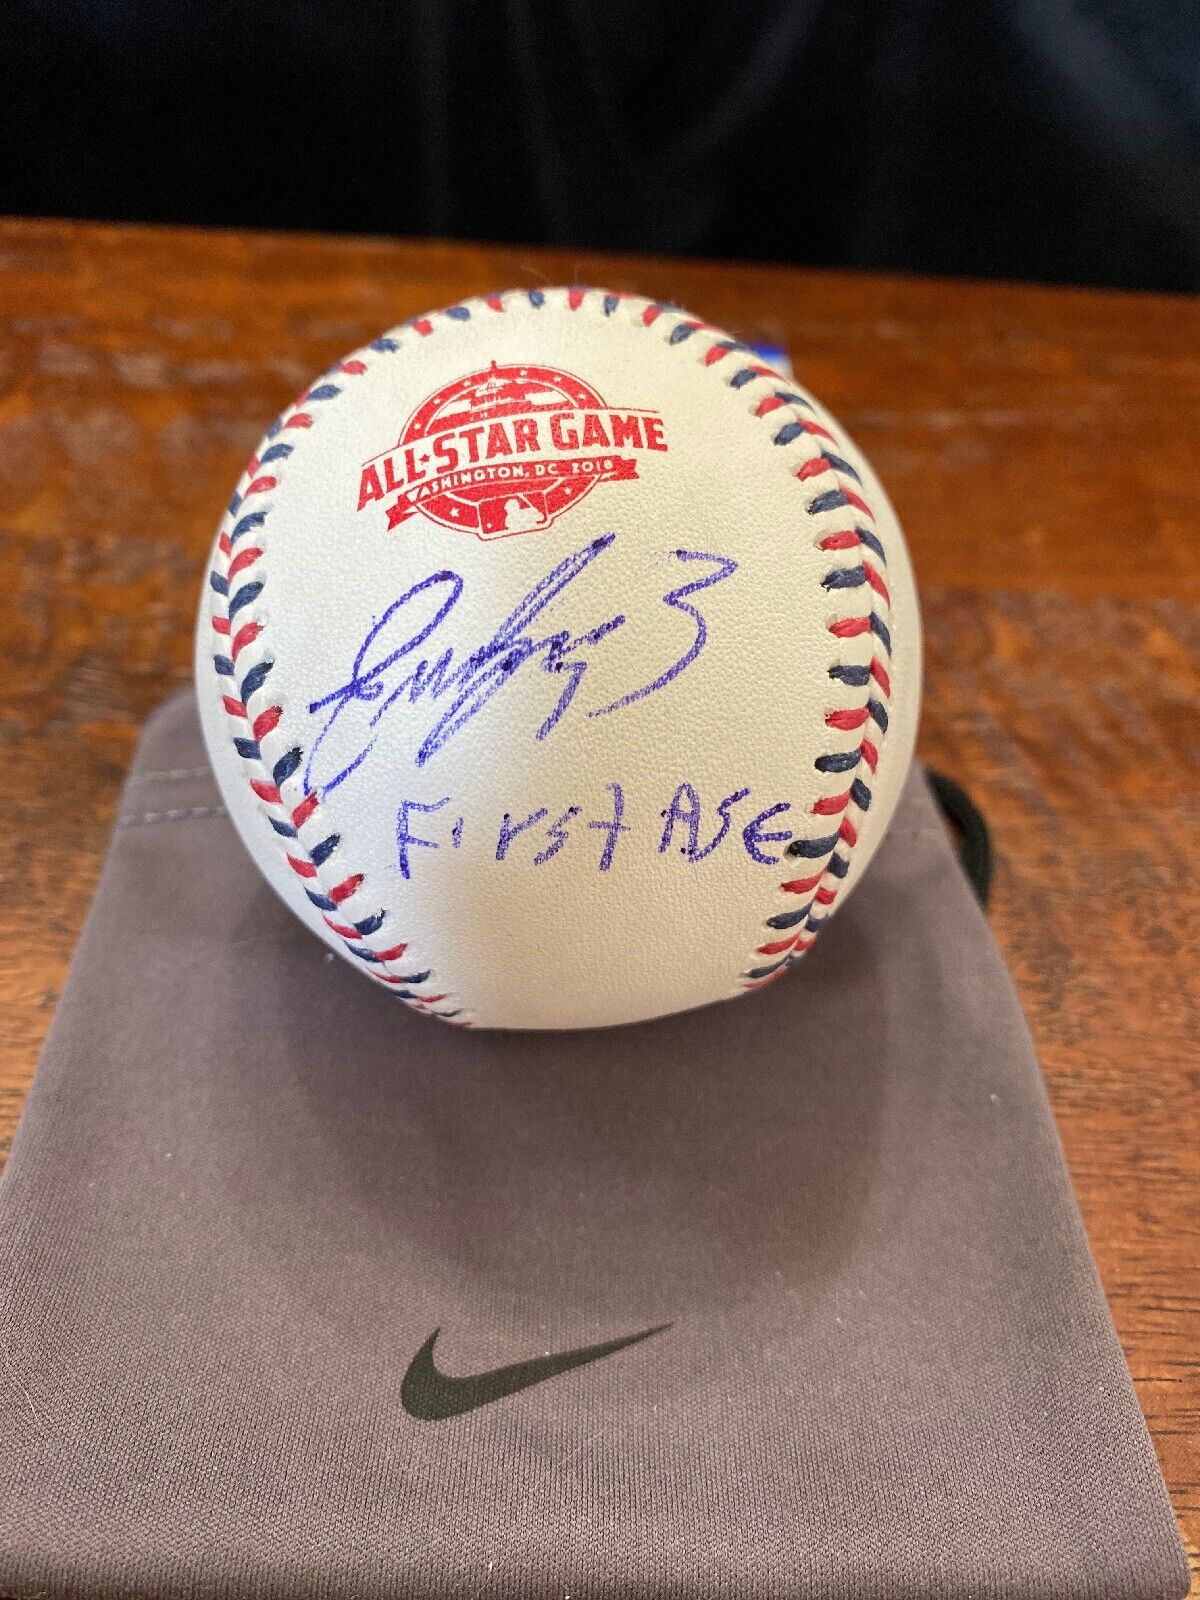 Eugenio Suarez Signed 2018 All Star Baseball PSA DNA Coa Cincinnati Reds